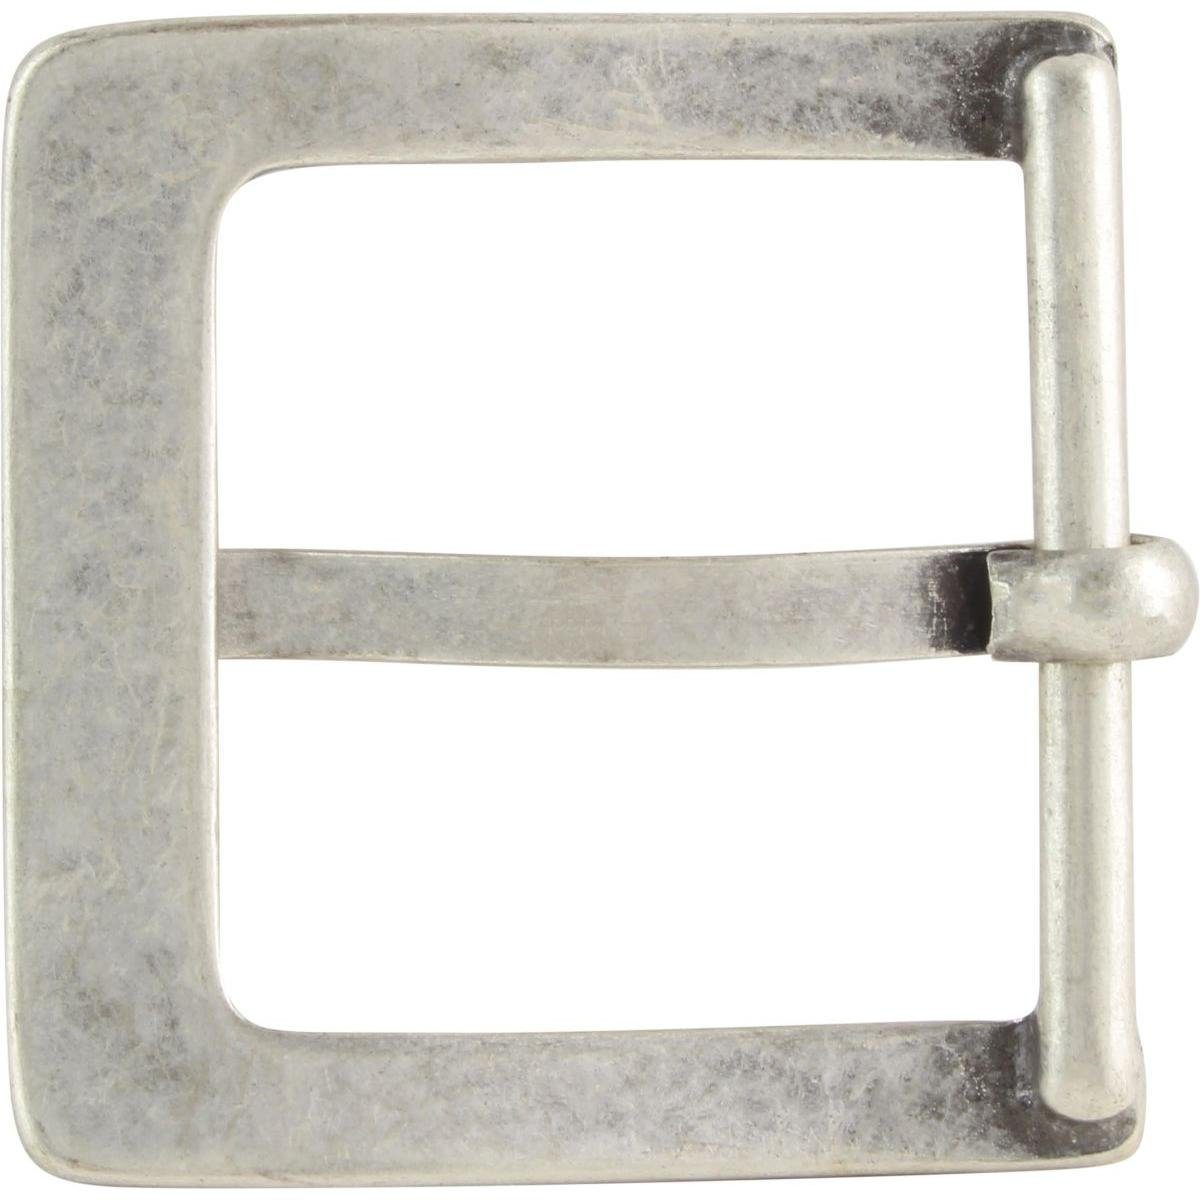 cm 40mm 4,0 - Gürtelschnalle Wechselschließe Gürtel Dorn-Schließe - Rame - Gürtelschließe BELTINGER